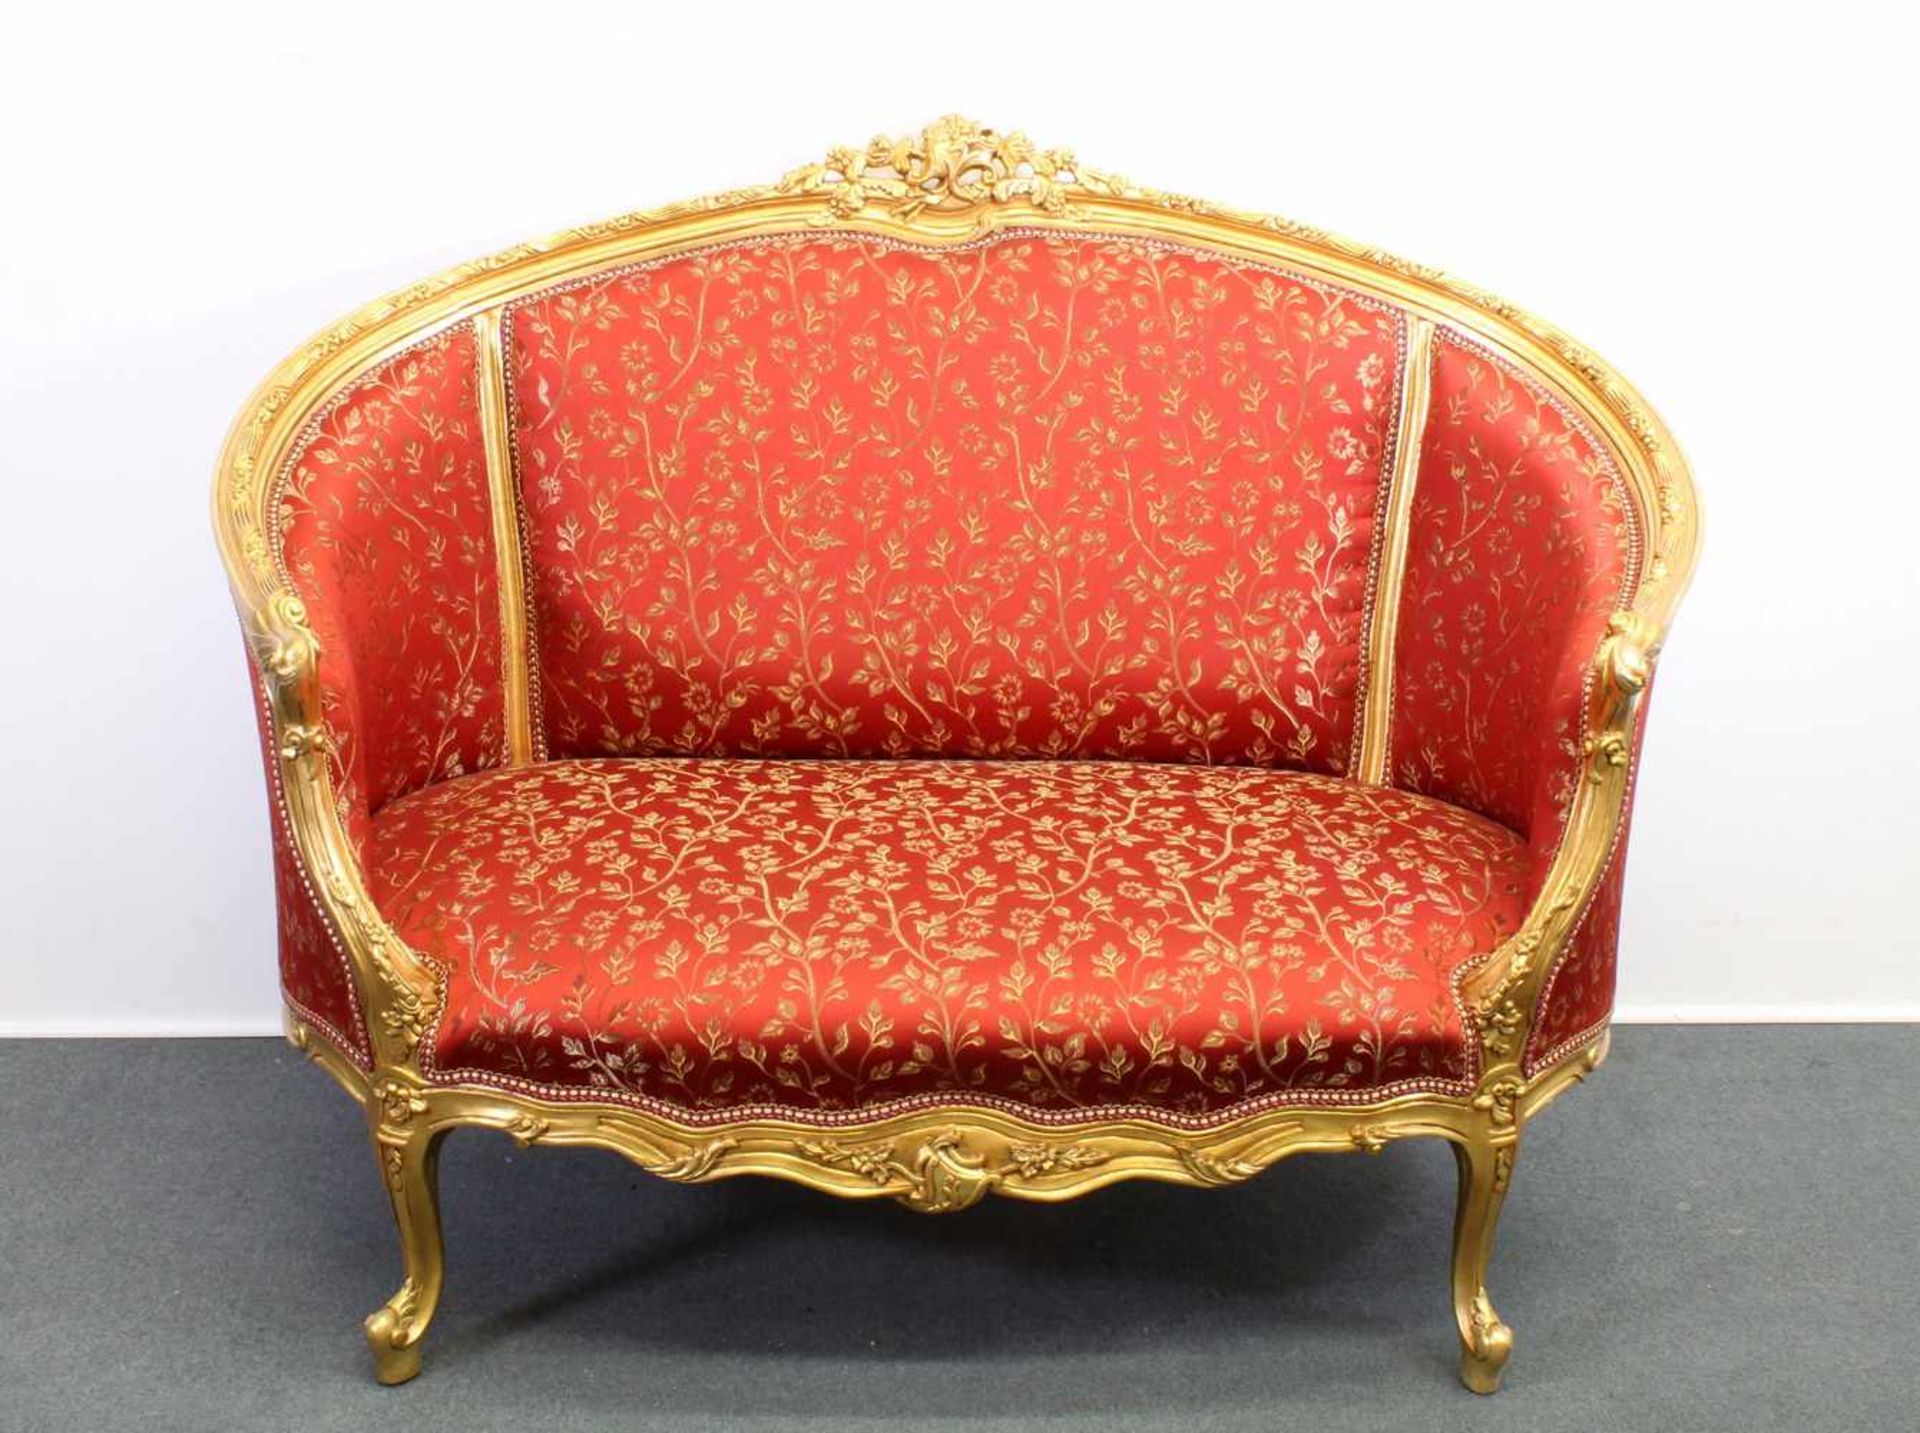 Sofa, zweisitzig, Barockstil, neuzeitlich, Gestell mit floralem goldbronzierten Schnitzwerk, roter